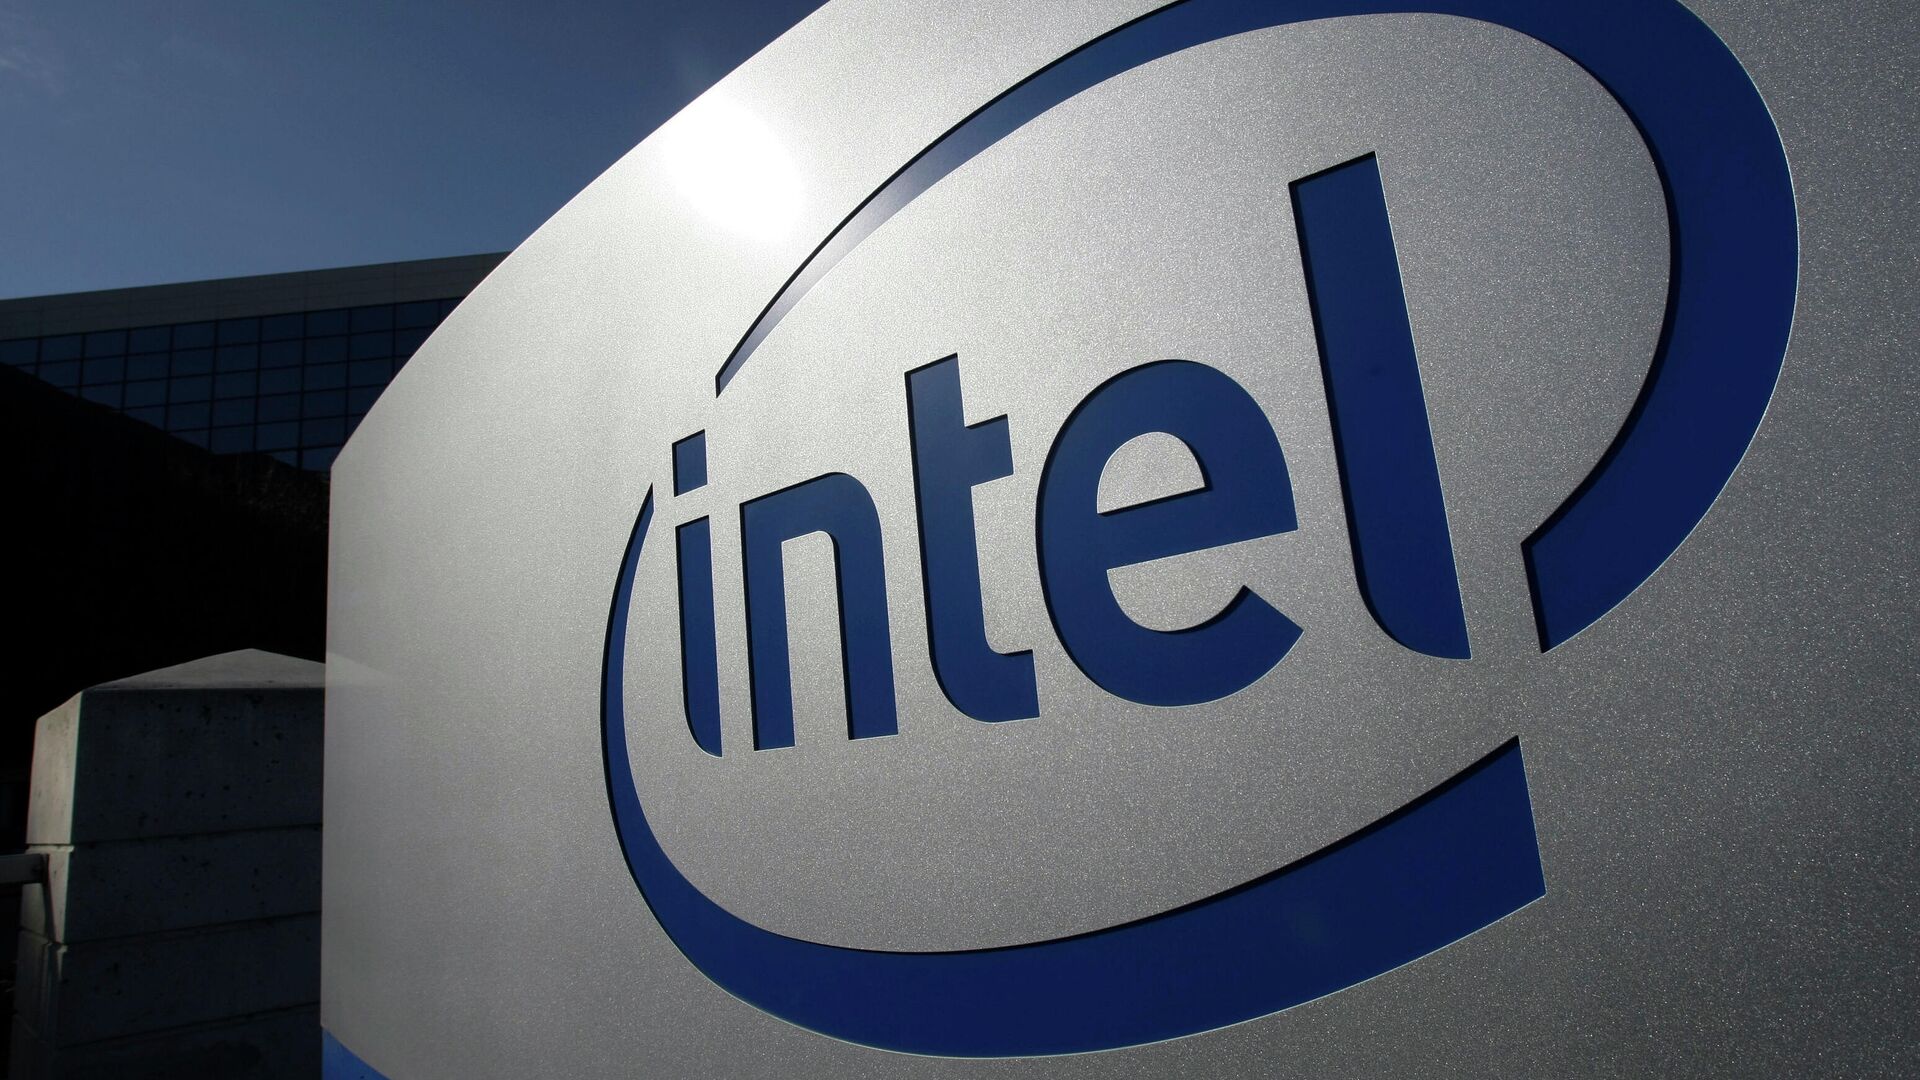 Первая видеокарта от Intel замечена на видео